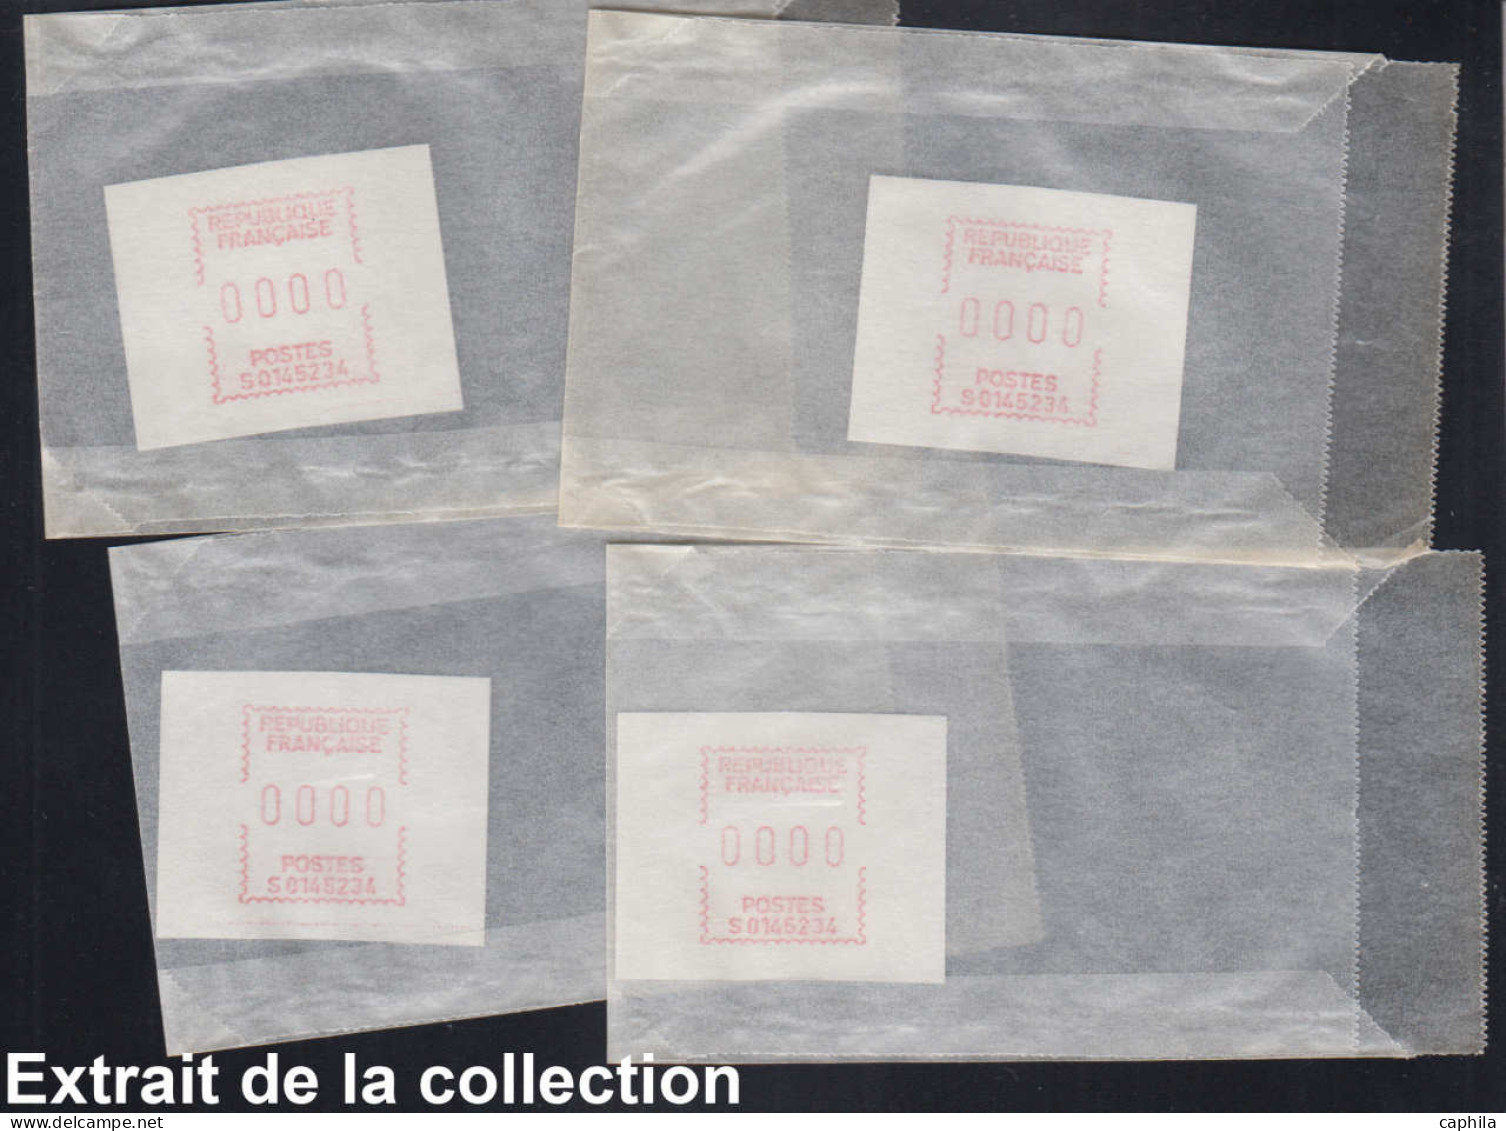 FRANCE Distributeurs LOT - Stock marchand en 3 boites, timbres neufs, quelques essais et démonstrations, idéal pour déta